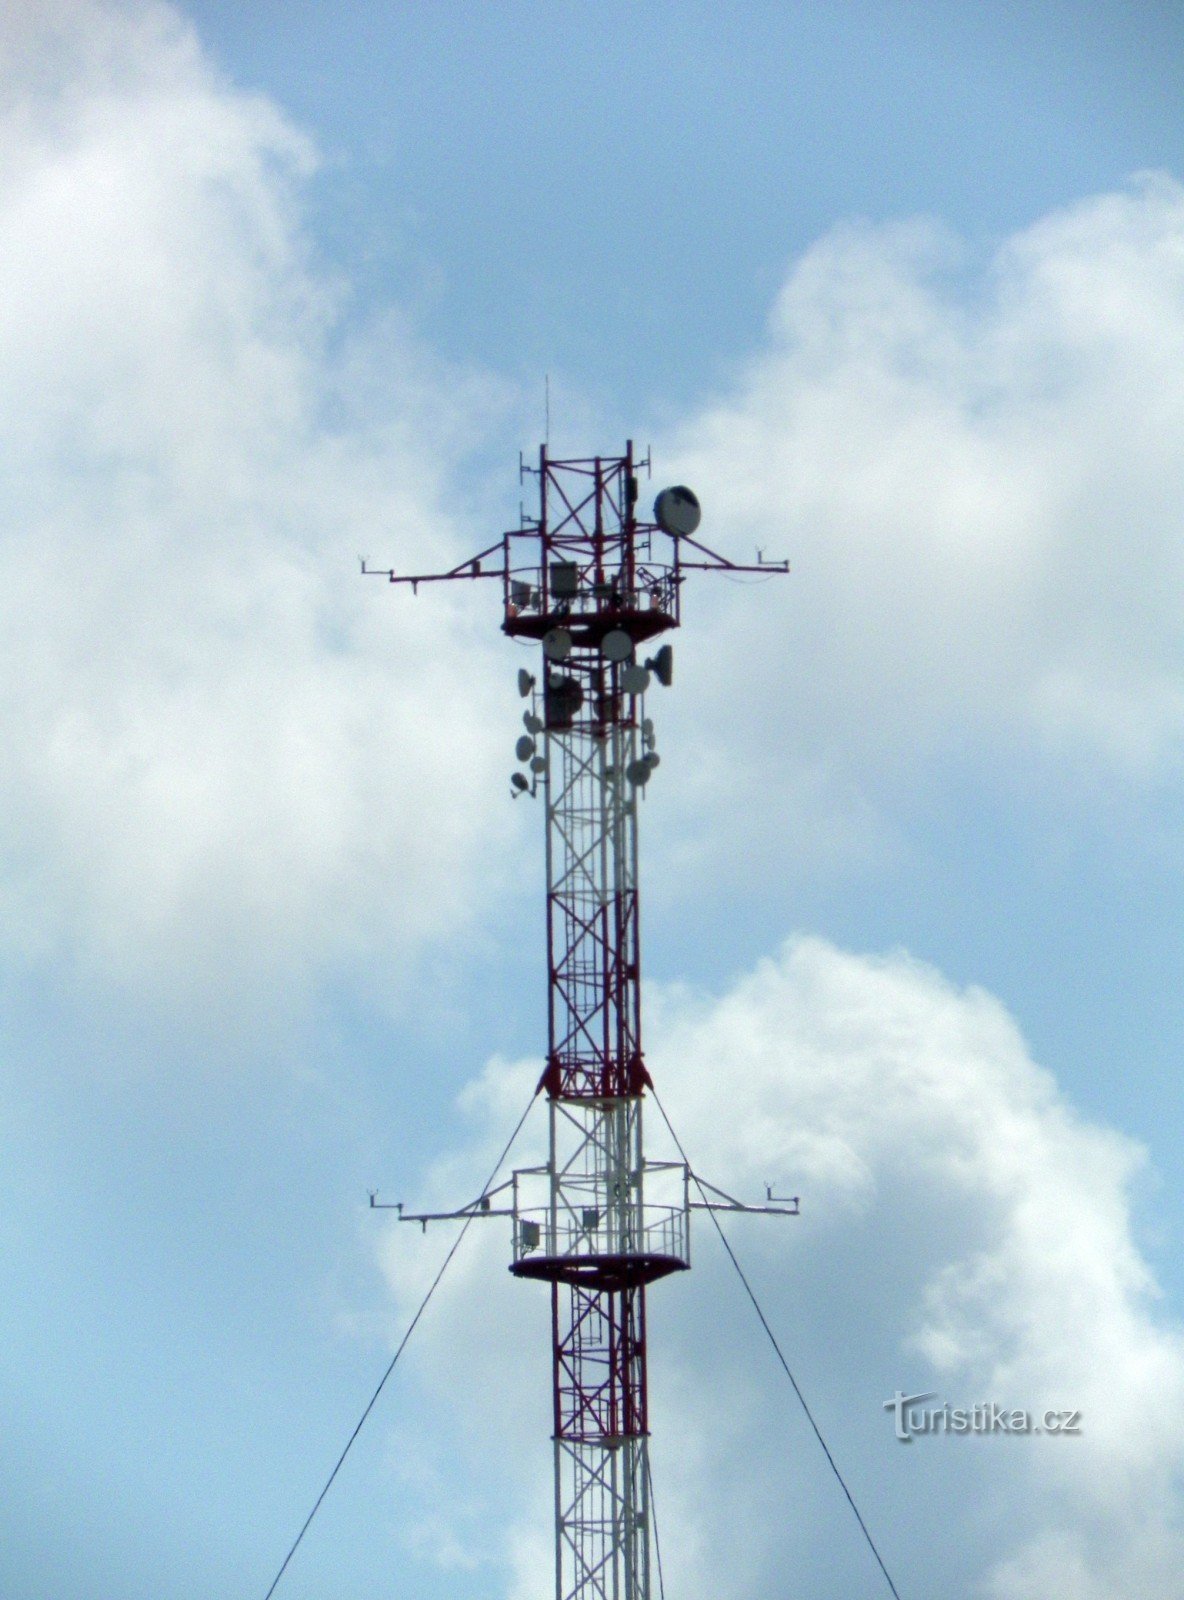 Detalj vrha jarbola s web kamerom, meteo mjeračima i telekomunikacijskim antenama